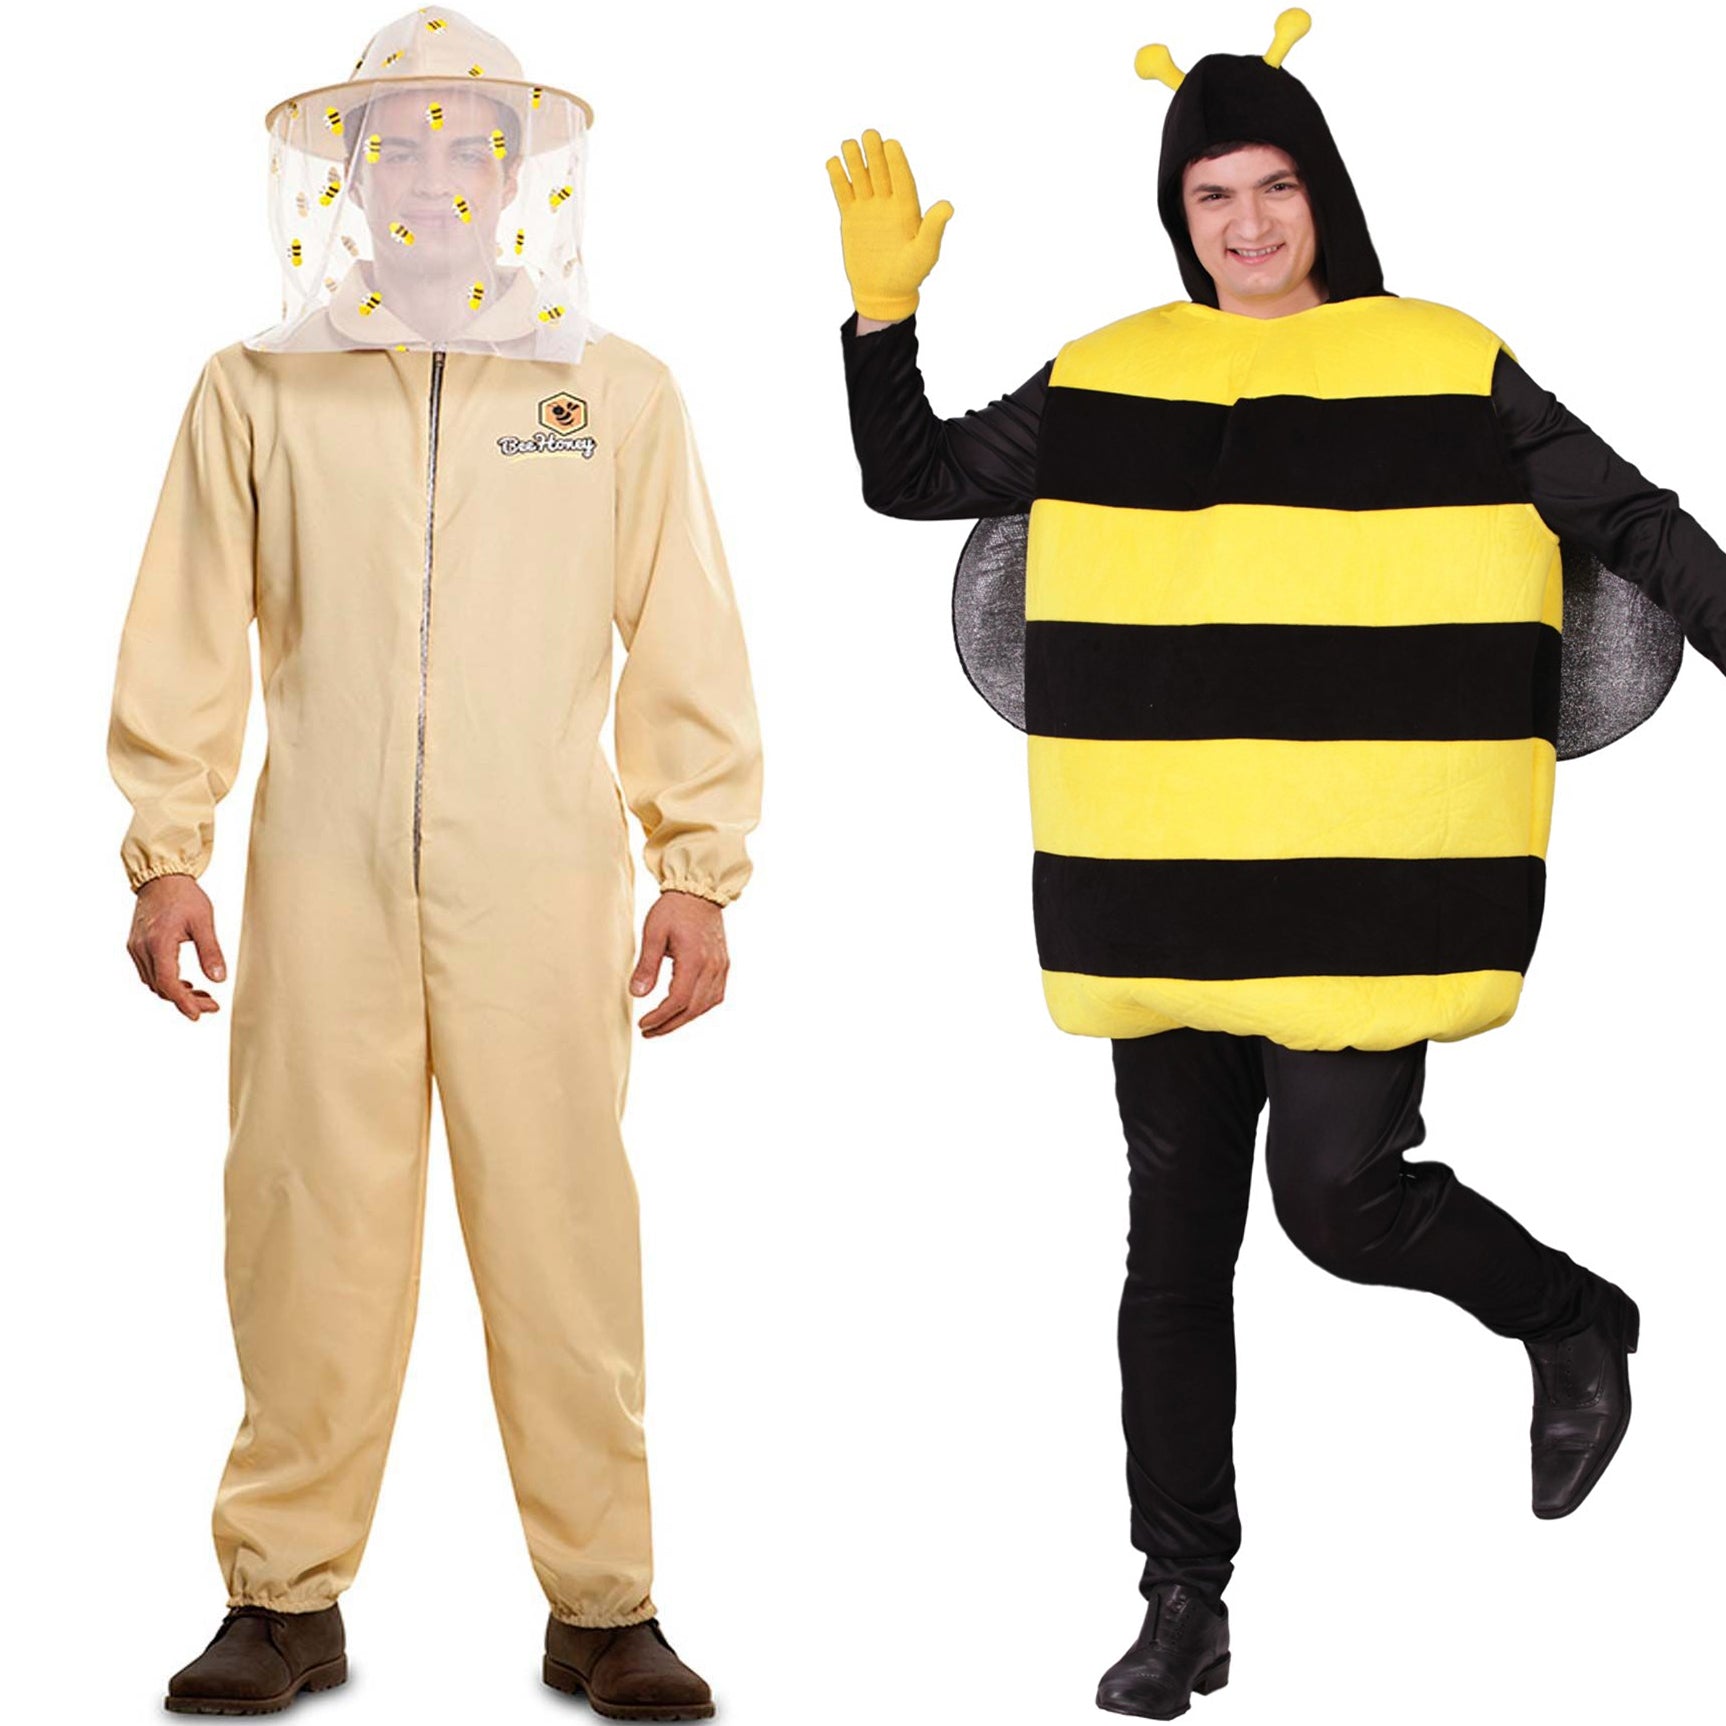 Disfraz abeja para mujer - Envío 24h